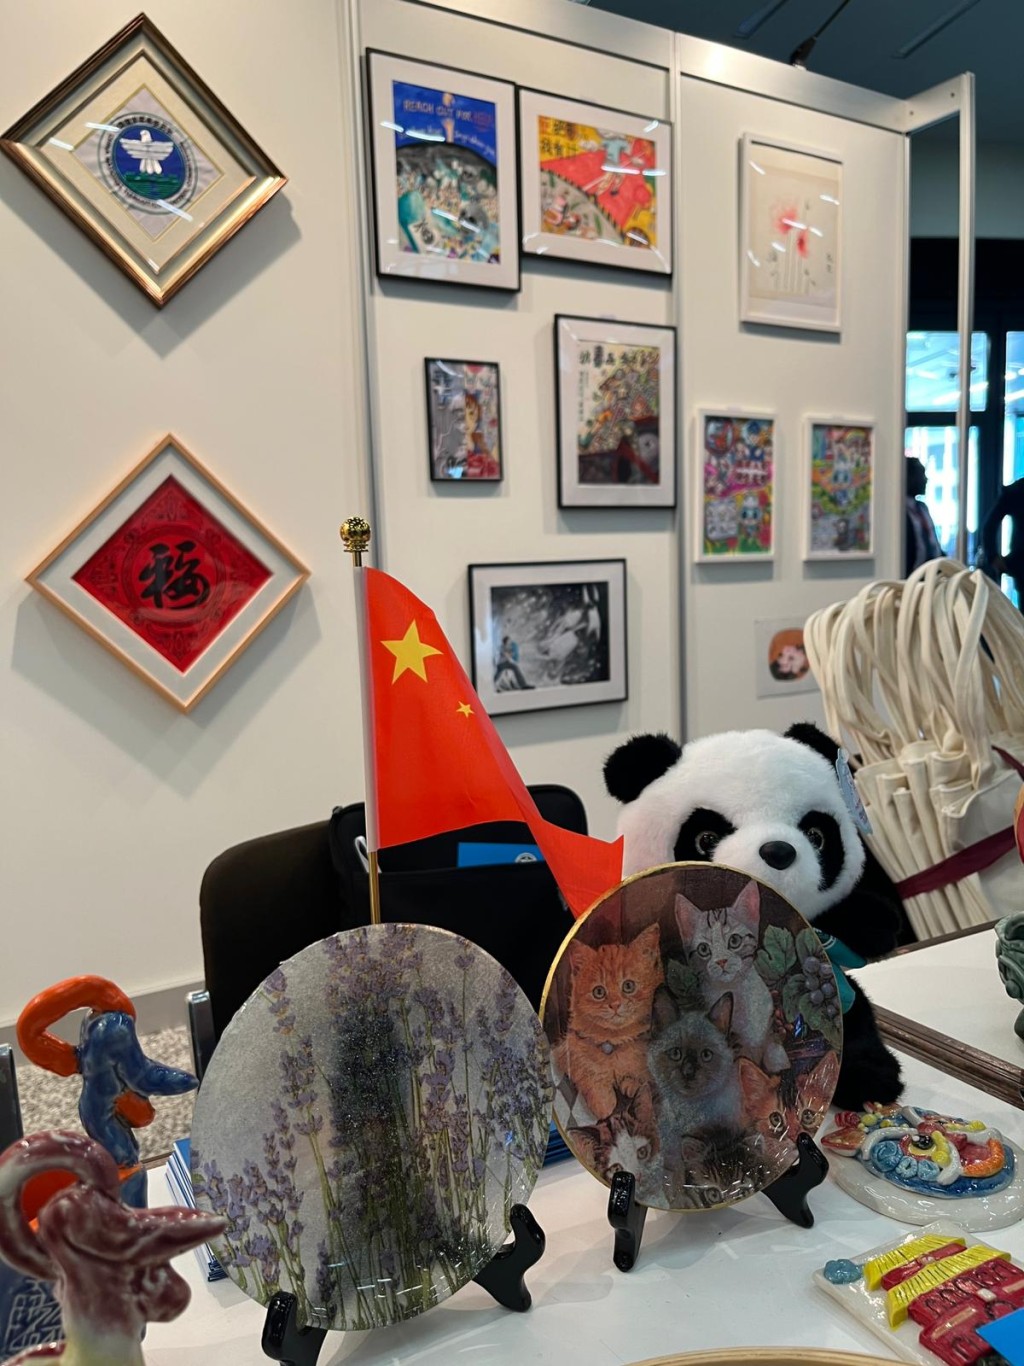 展覽展示了不少來自香港的禁毒藝術作品。